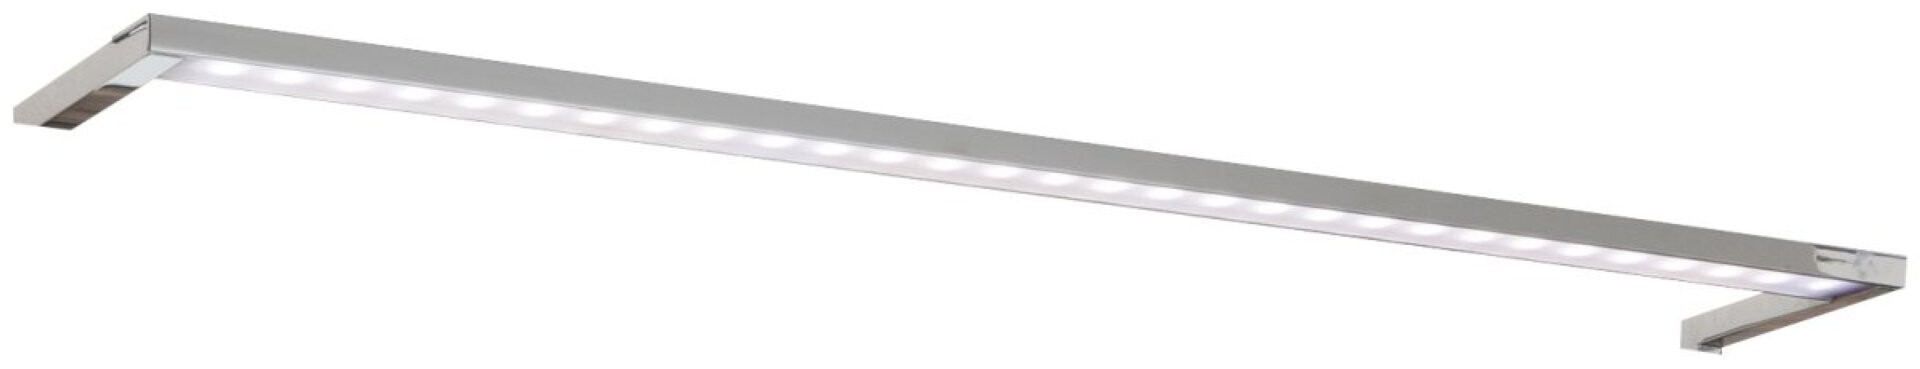 Fackelmann VIORA LED Aufsatzleuchte für Spiegelschränke 56 cm